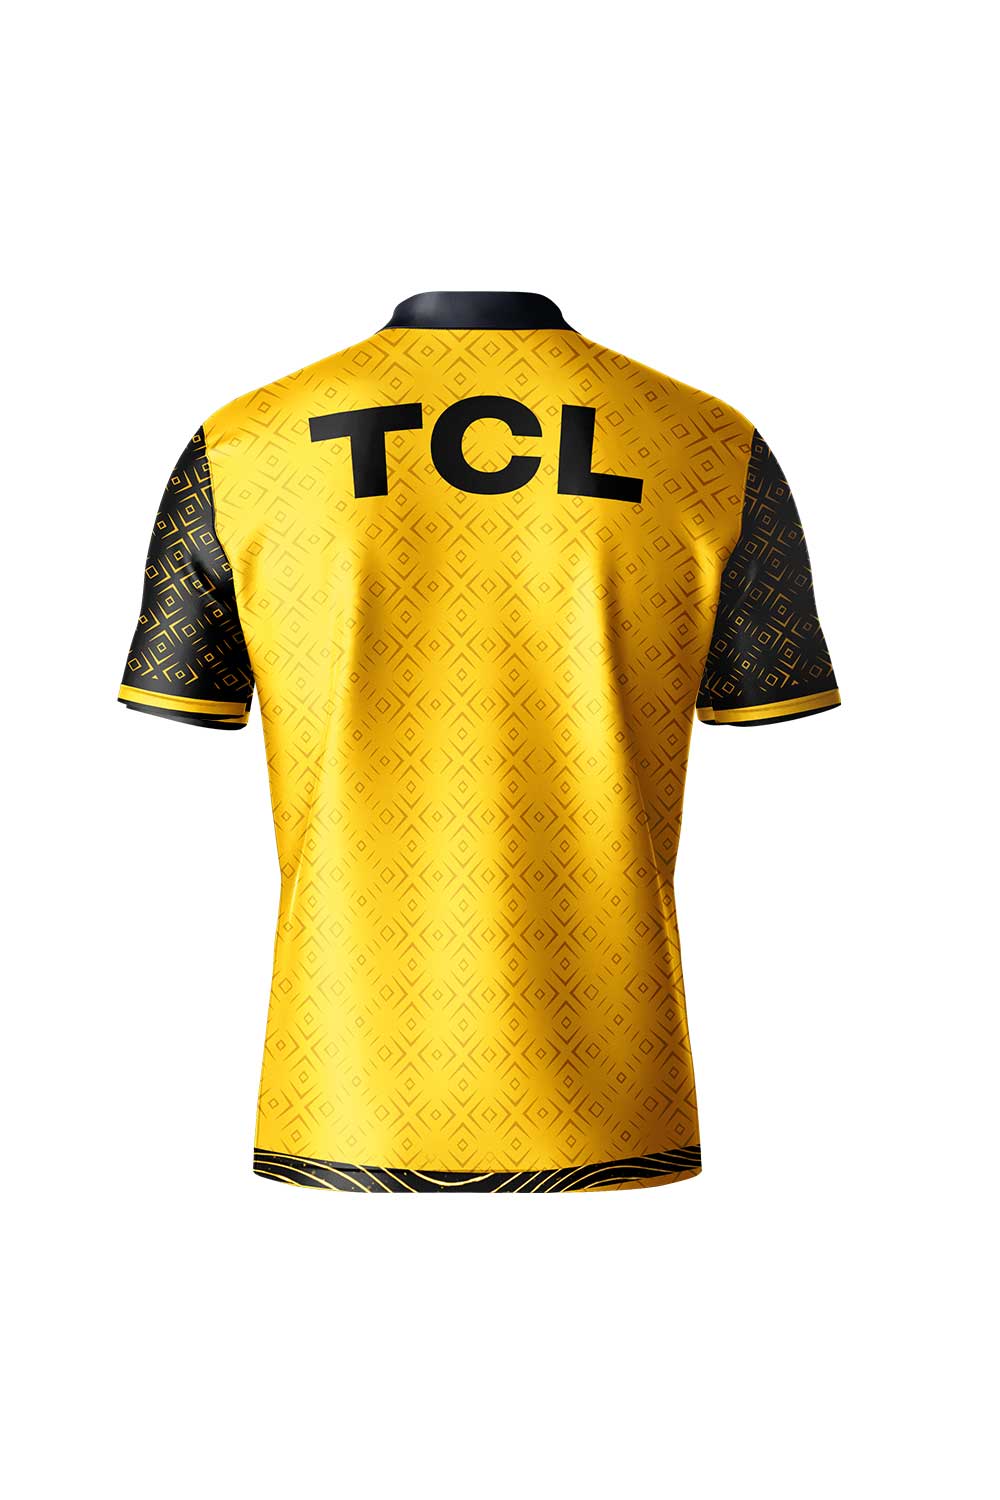 Official PSL 8 Match Day's Playing Jersey - Fan Shirt | PSL Team Jersey | top quality psl t-shirt